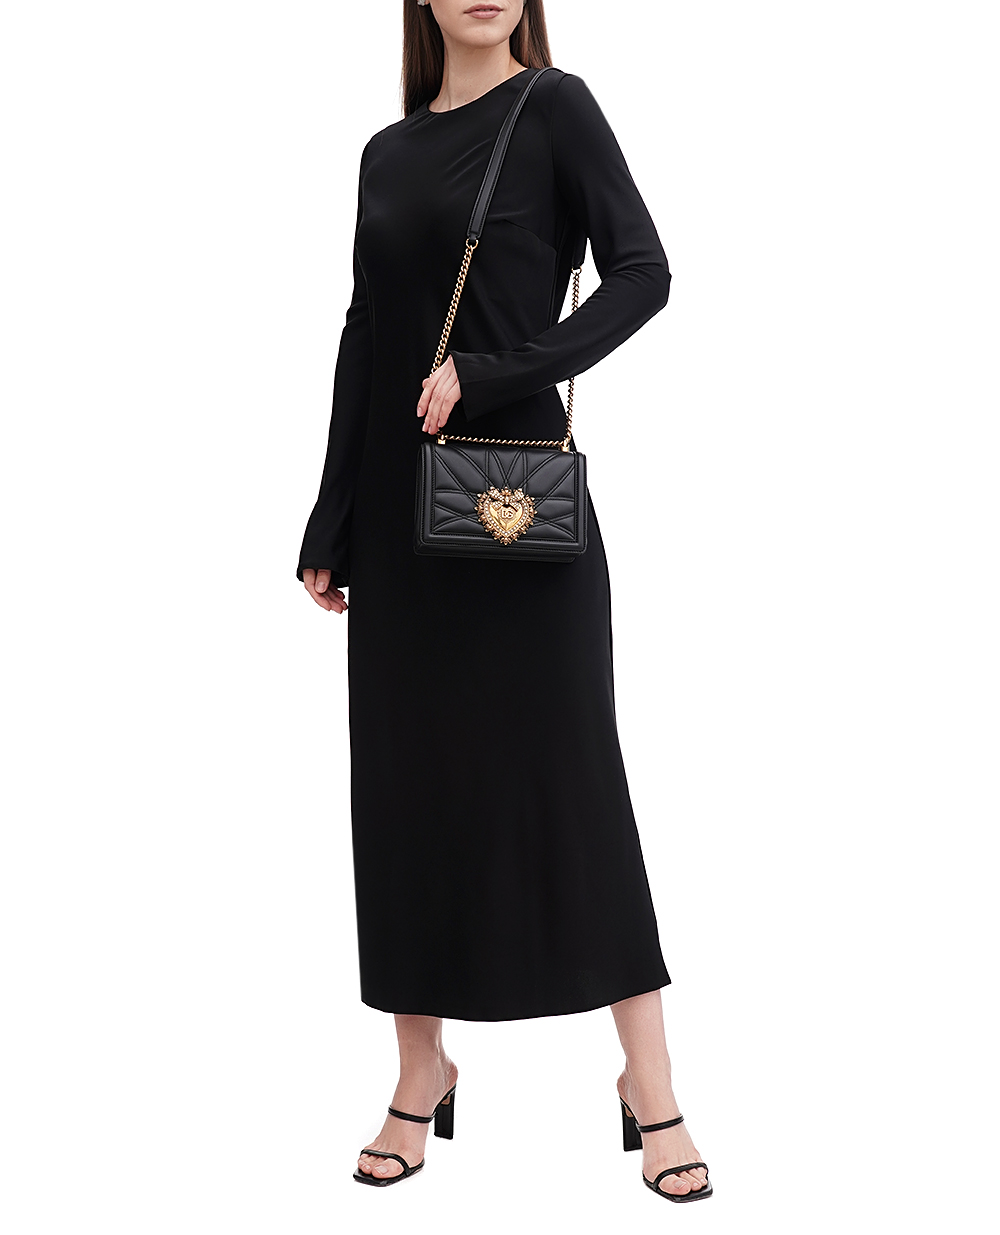 Кожаная сумка Devotion Medium Dolce&Gabbana BB7158-AW437, черный цвет • Купить в интернет-магазине Kameron